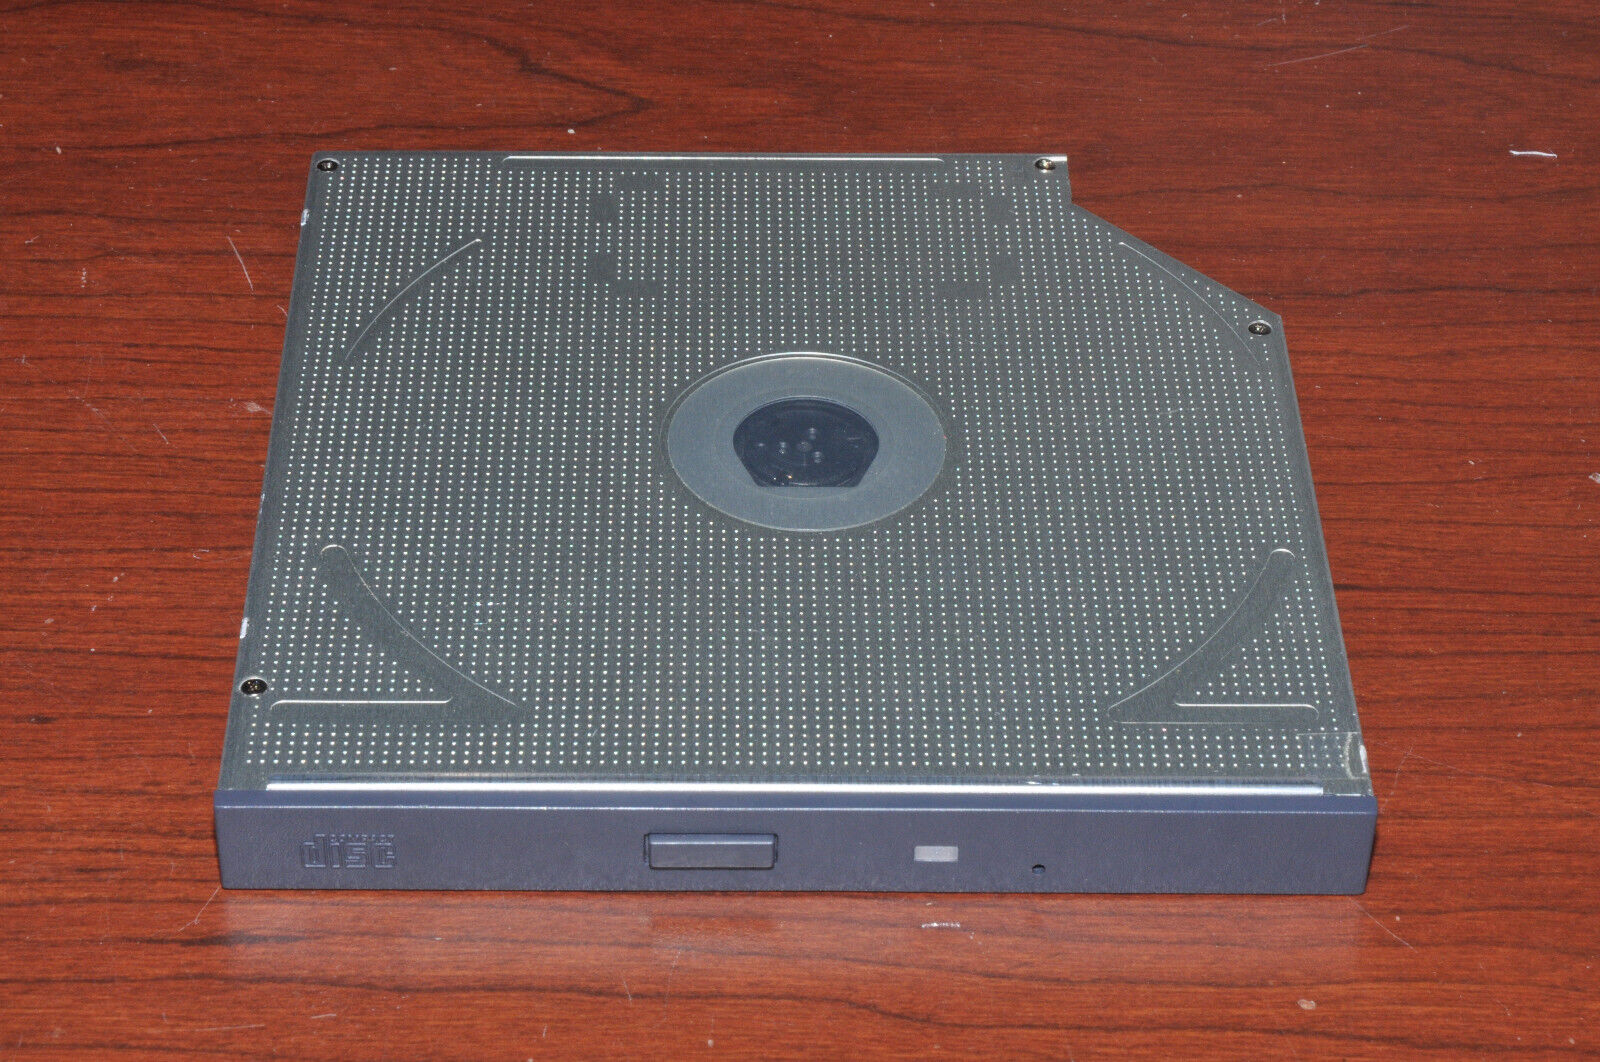 Teac CD-224E Dell Optiplex or Laptop CD-ROM Drive - Slimline